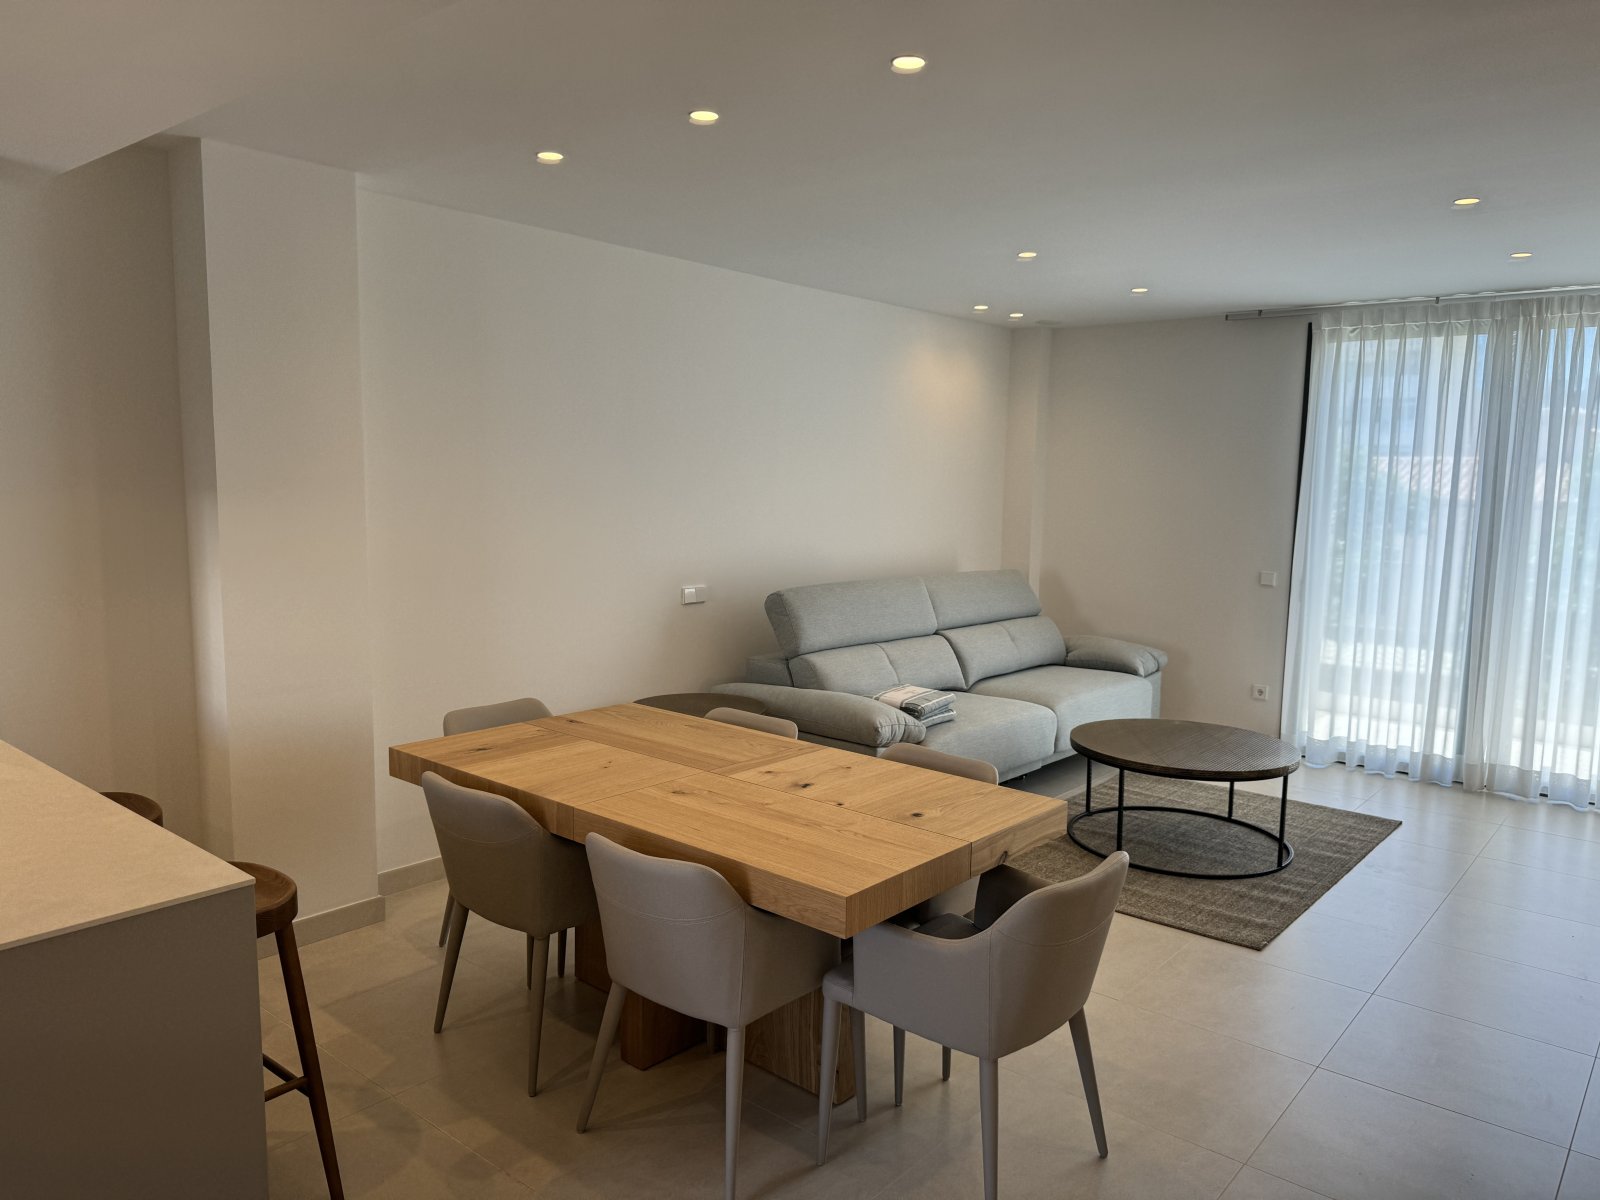 Wohnzimmer in der Luxus Wohnung in Palma